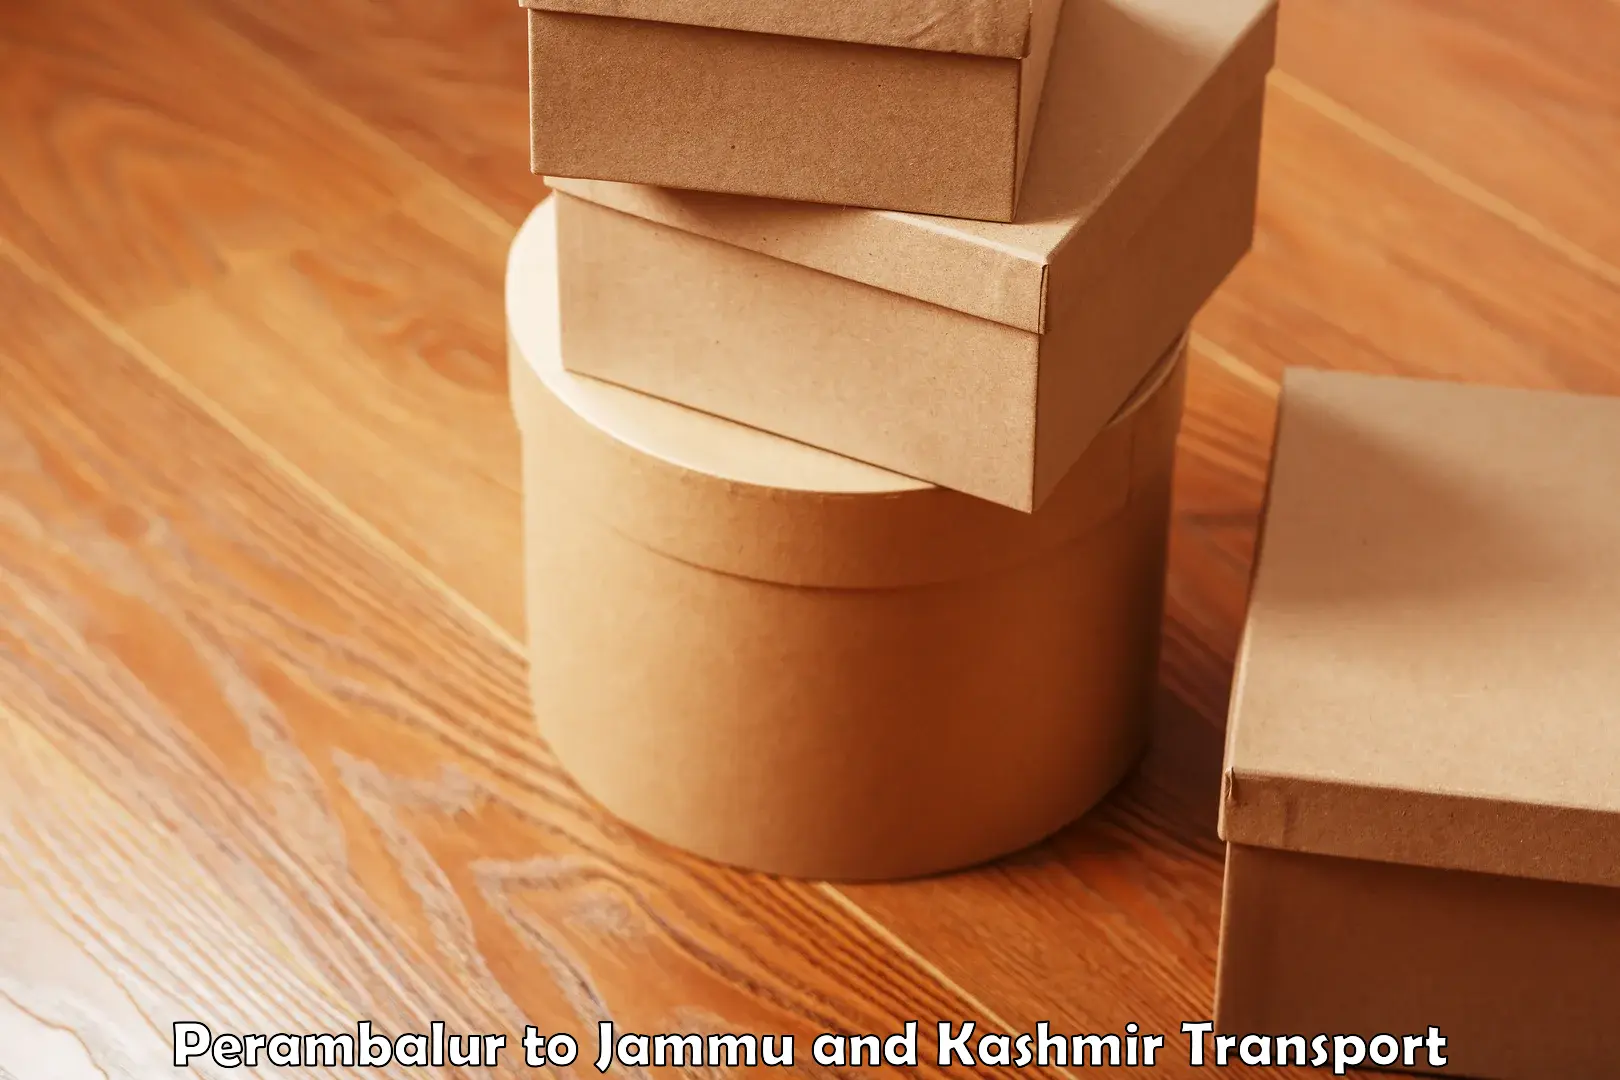 Two wheeler parcel service Perambalur to IIT Jammu